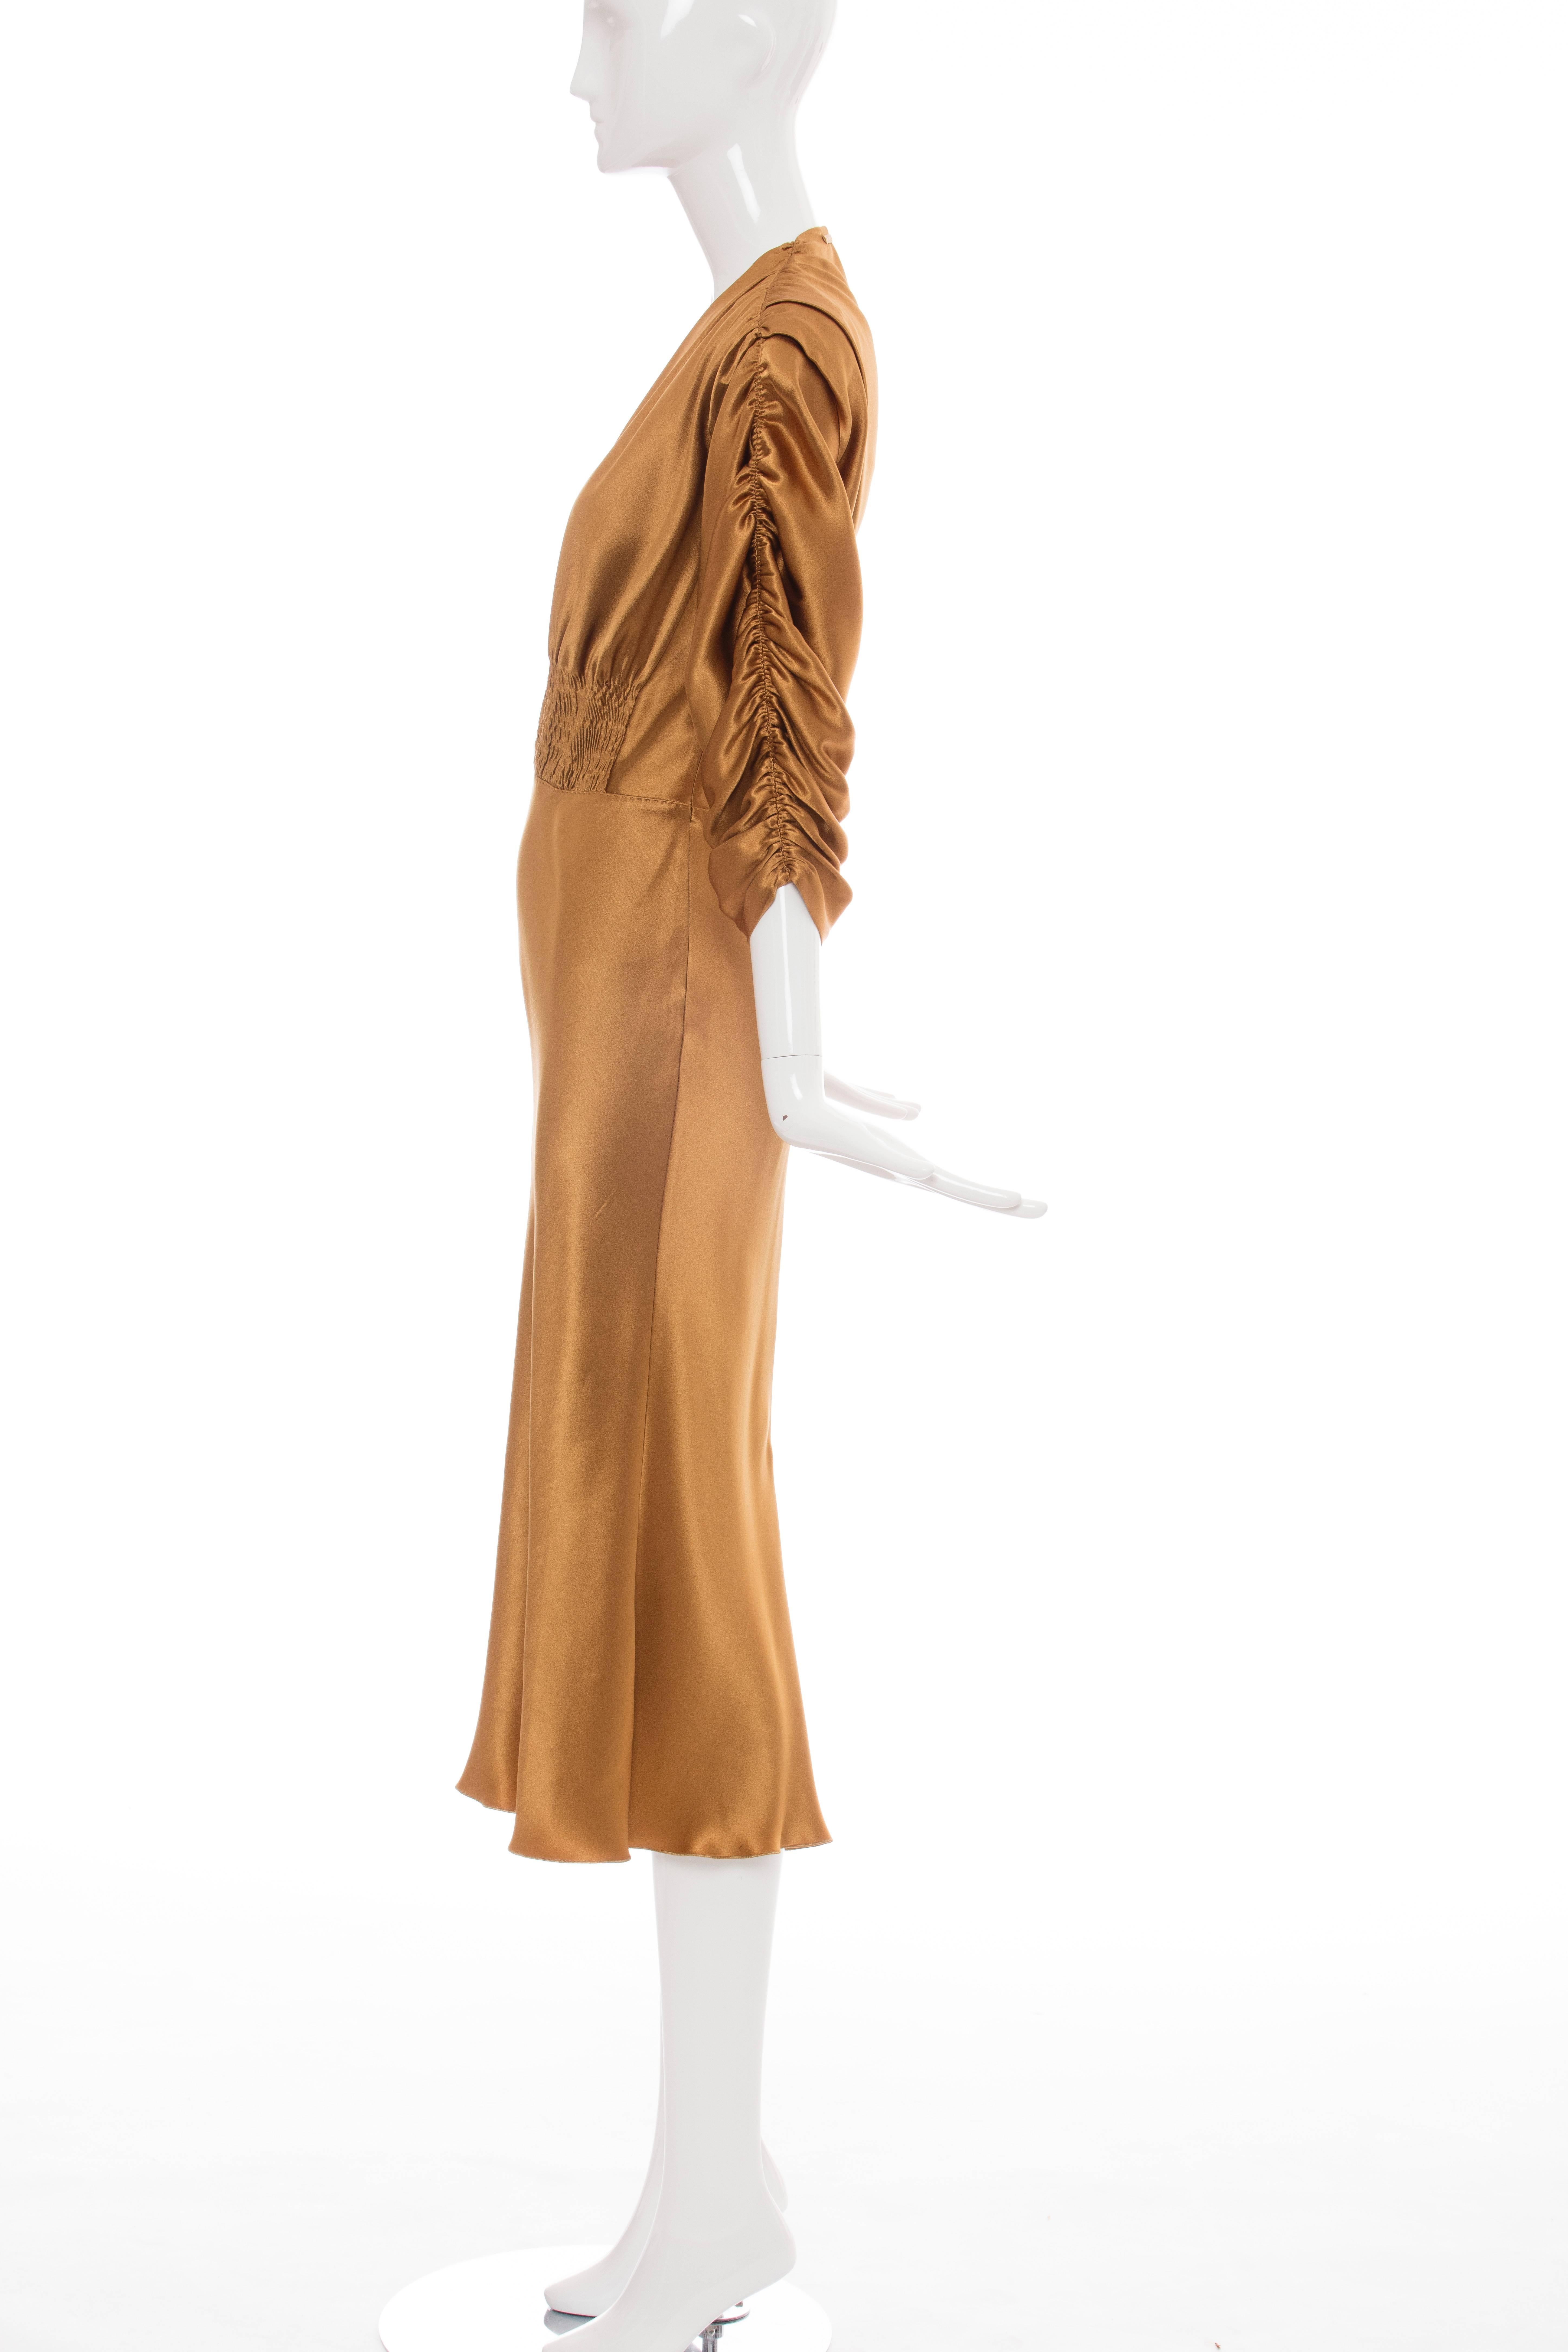 Jean Paul Gaultier Silk Charmeuse Dress, Circa 1990s 2